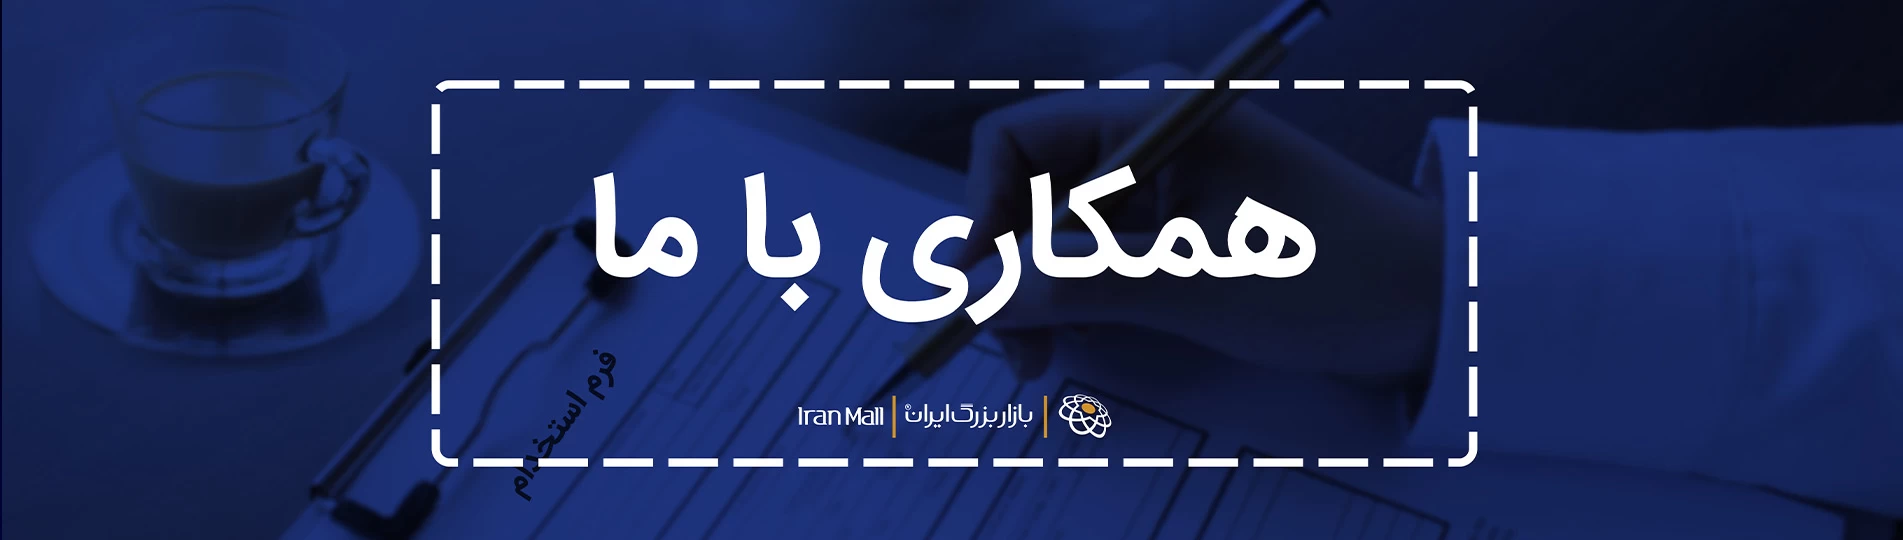 آگهی استخدام در بازار بزرگ ایران مال